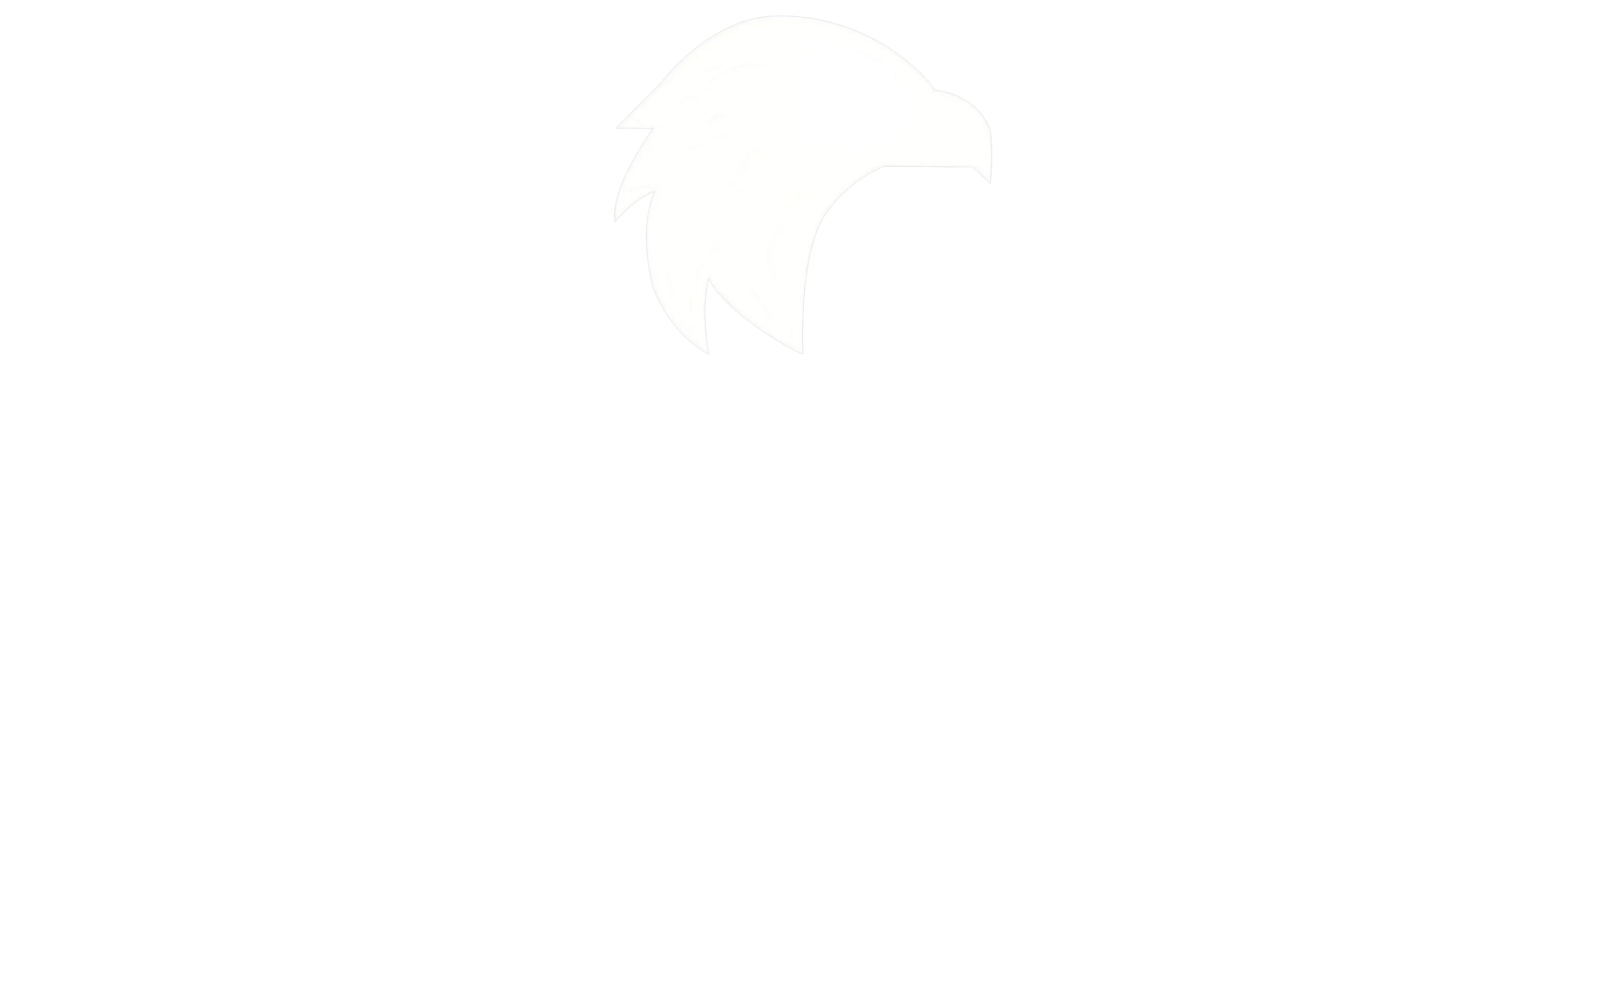 Carplast